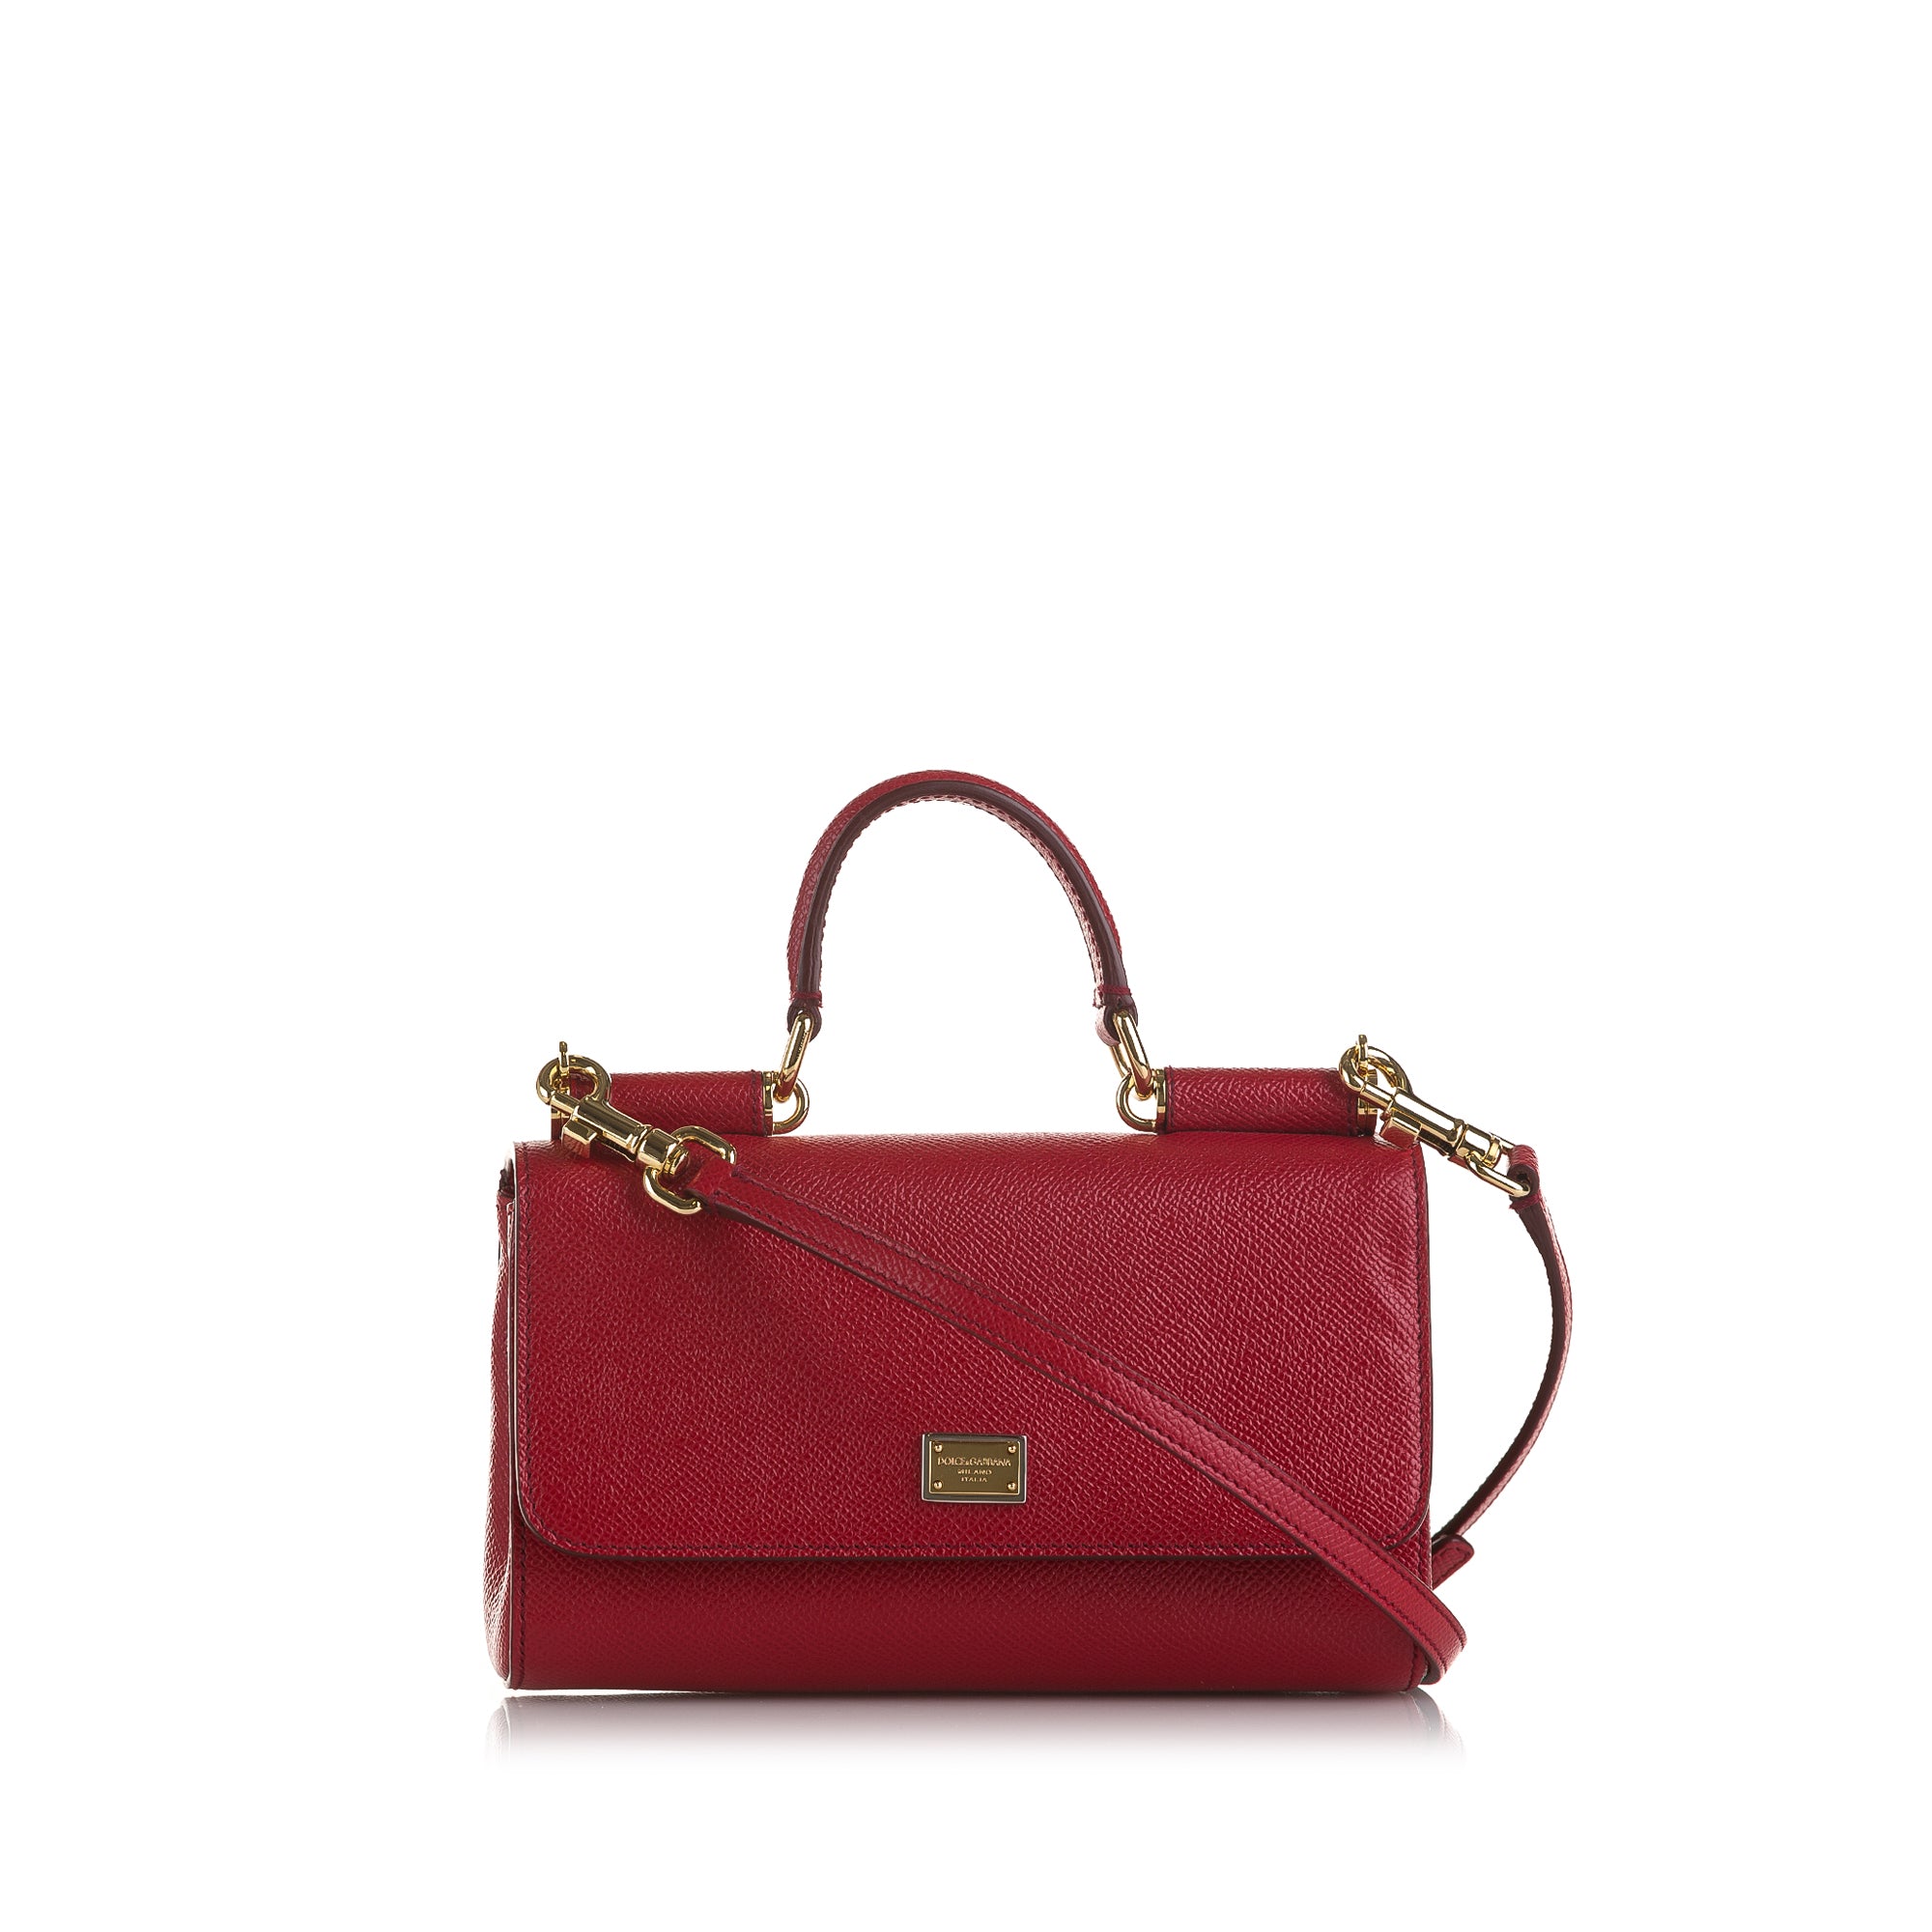 Dolce & Gabbana Red Miss Sicily Von Bag